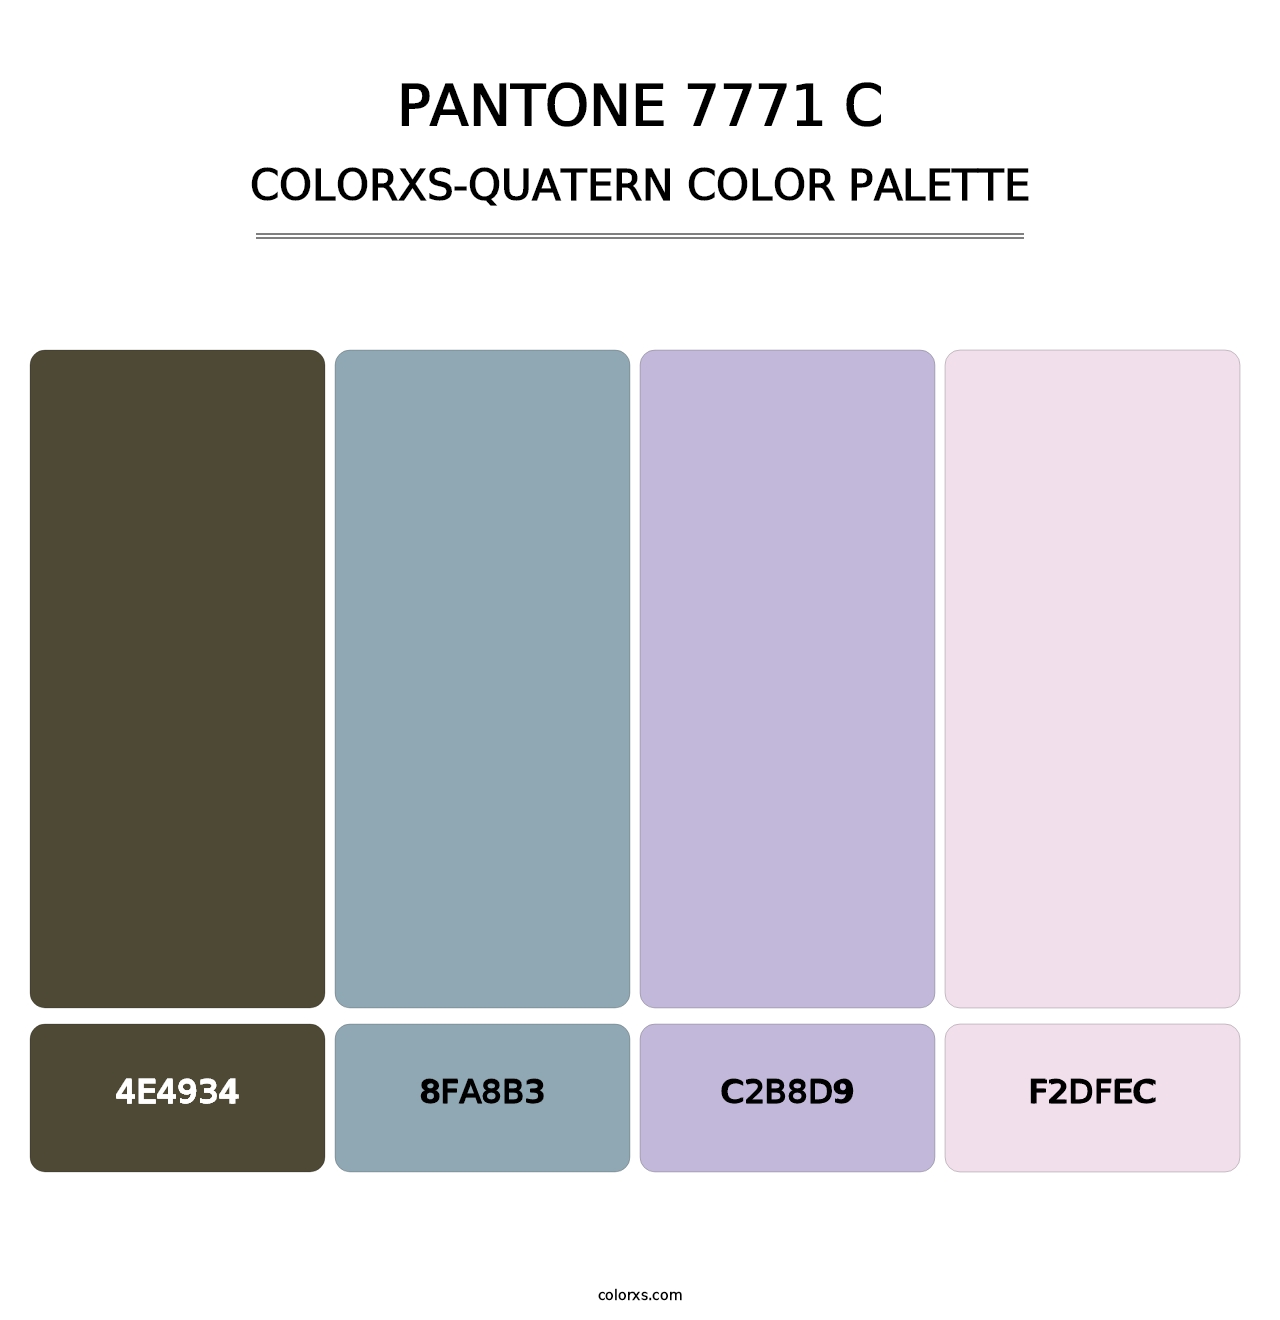 PANTONE 7771 C - Colorxs Quatern Palette